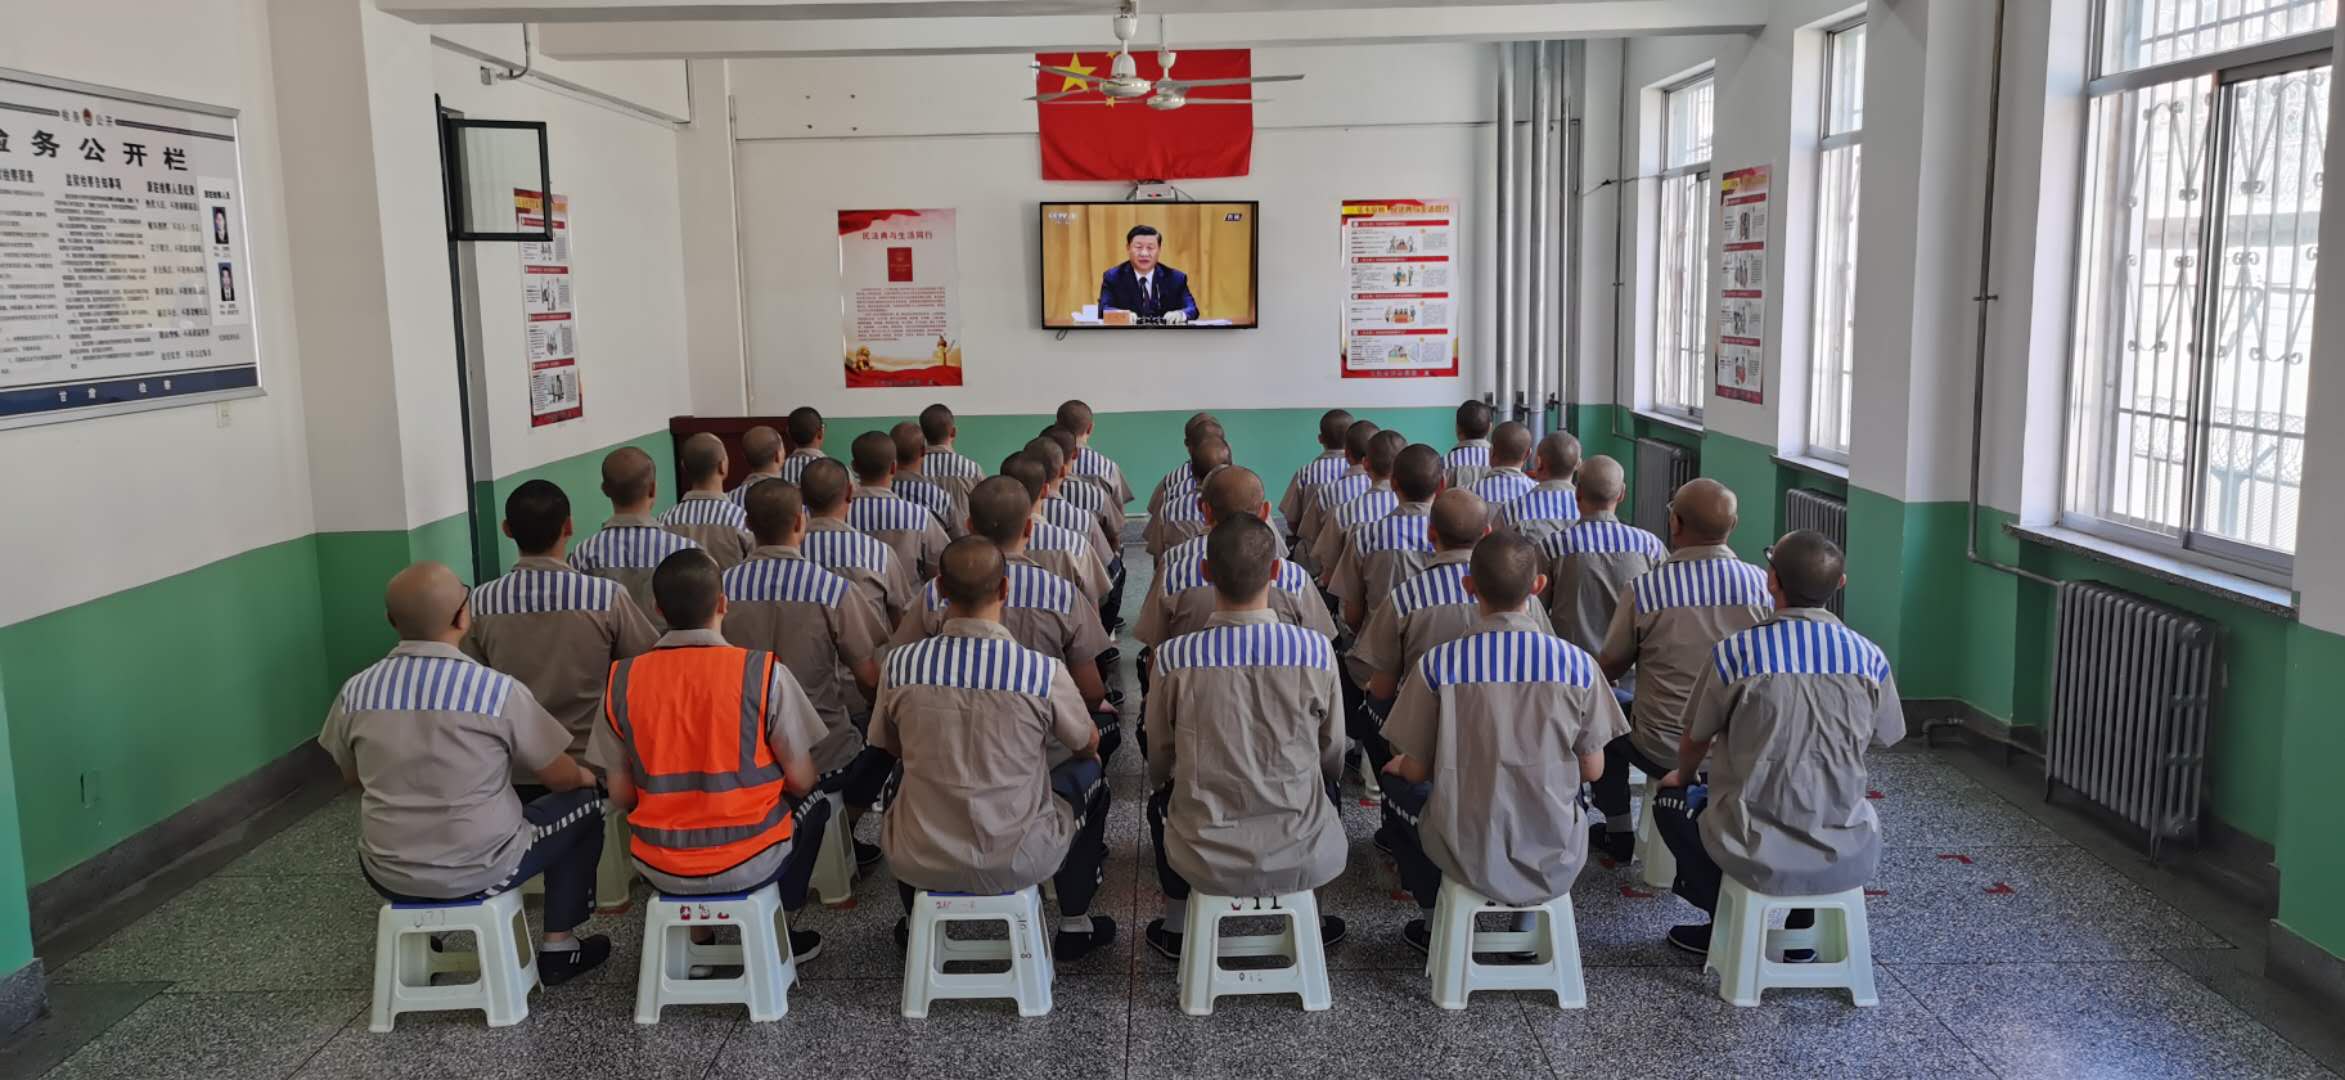 监狱囚服图片,中国囚服标准图片 - 伤感说说吧